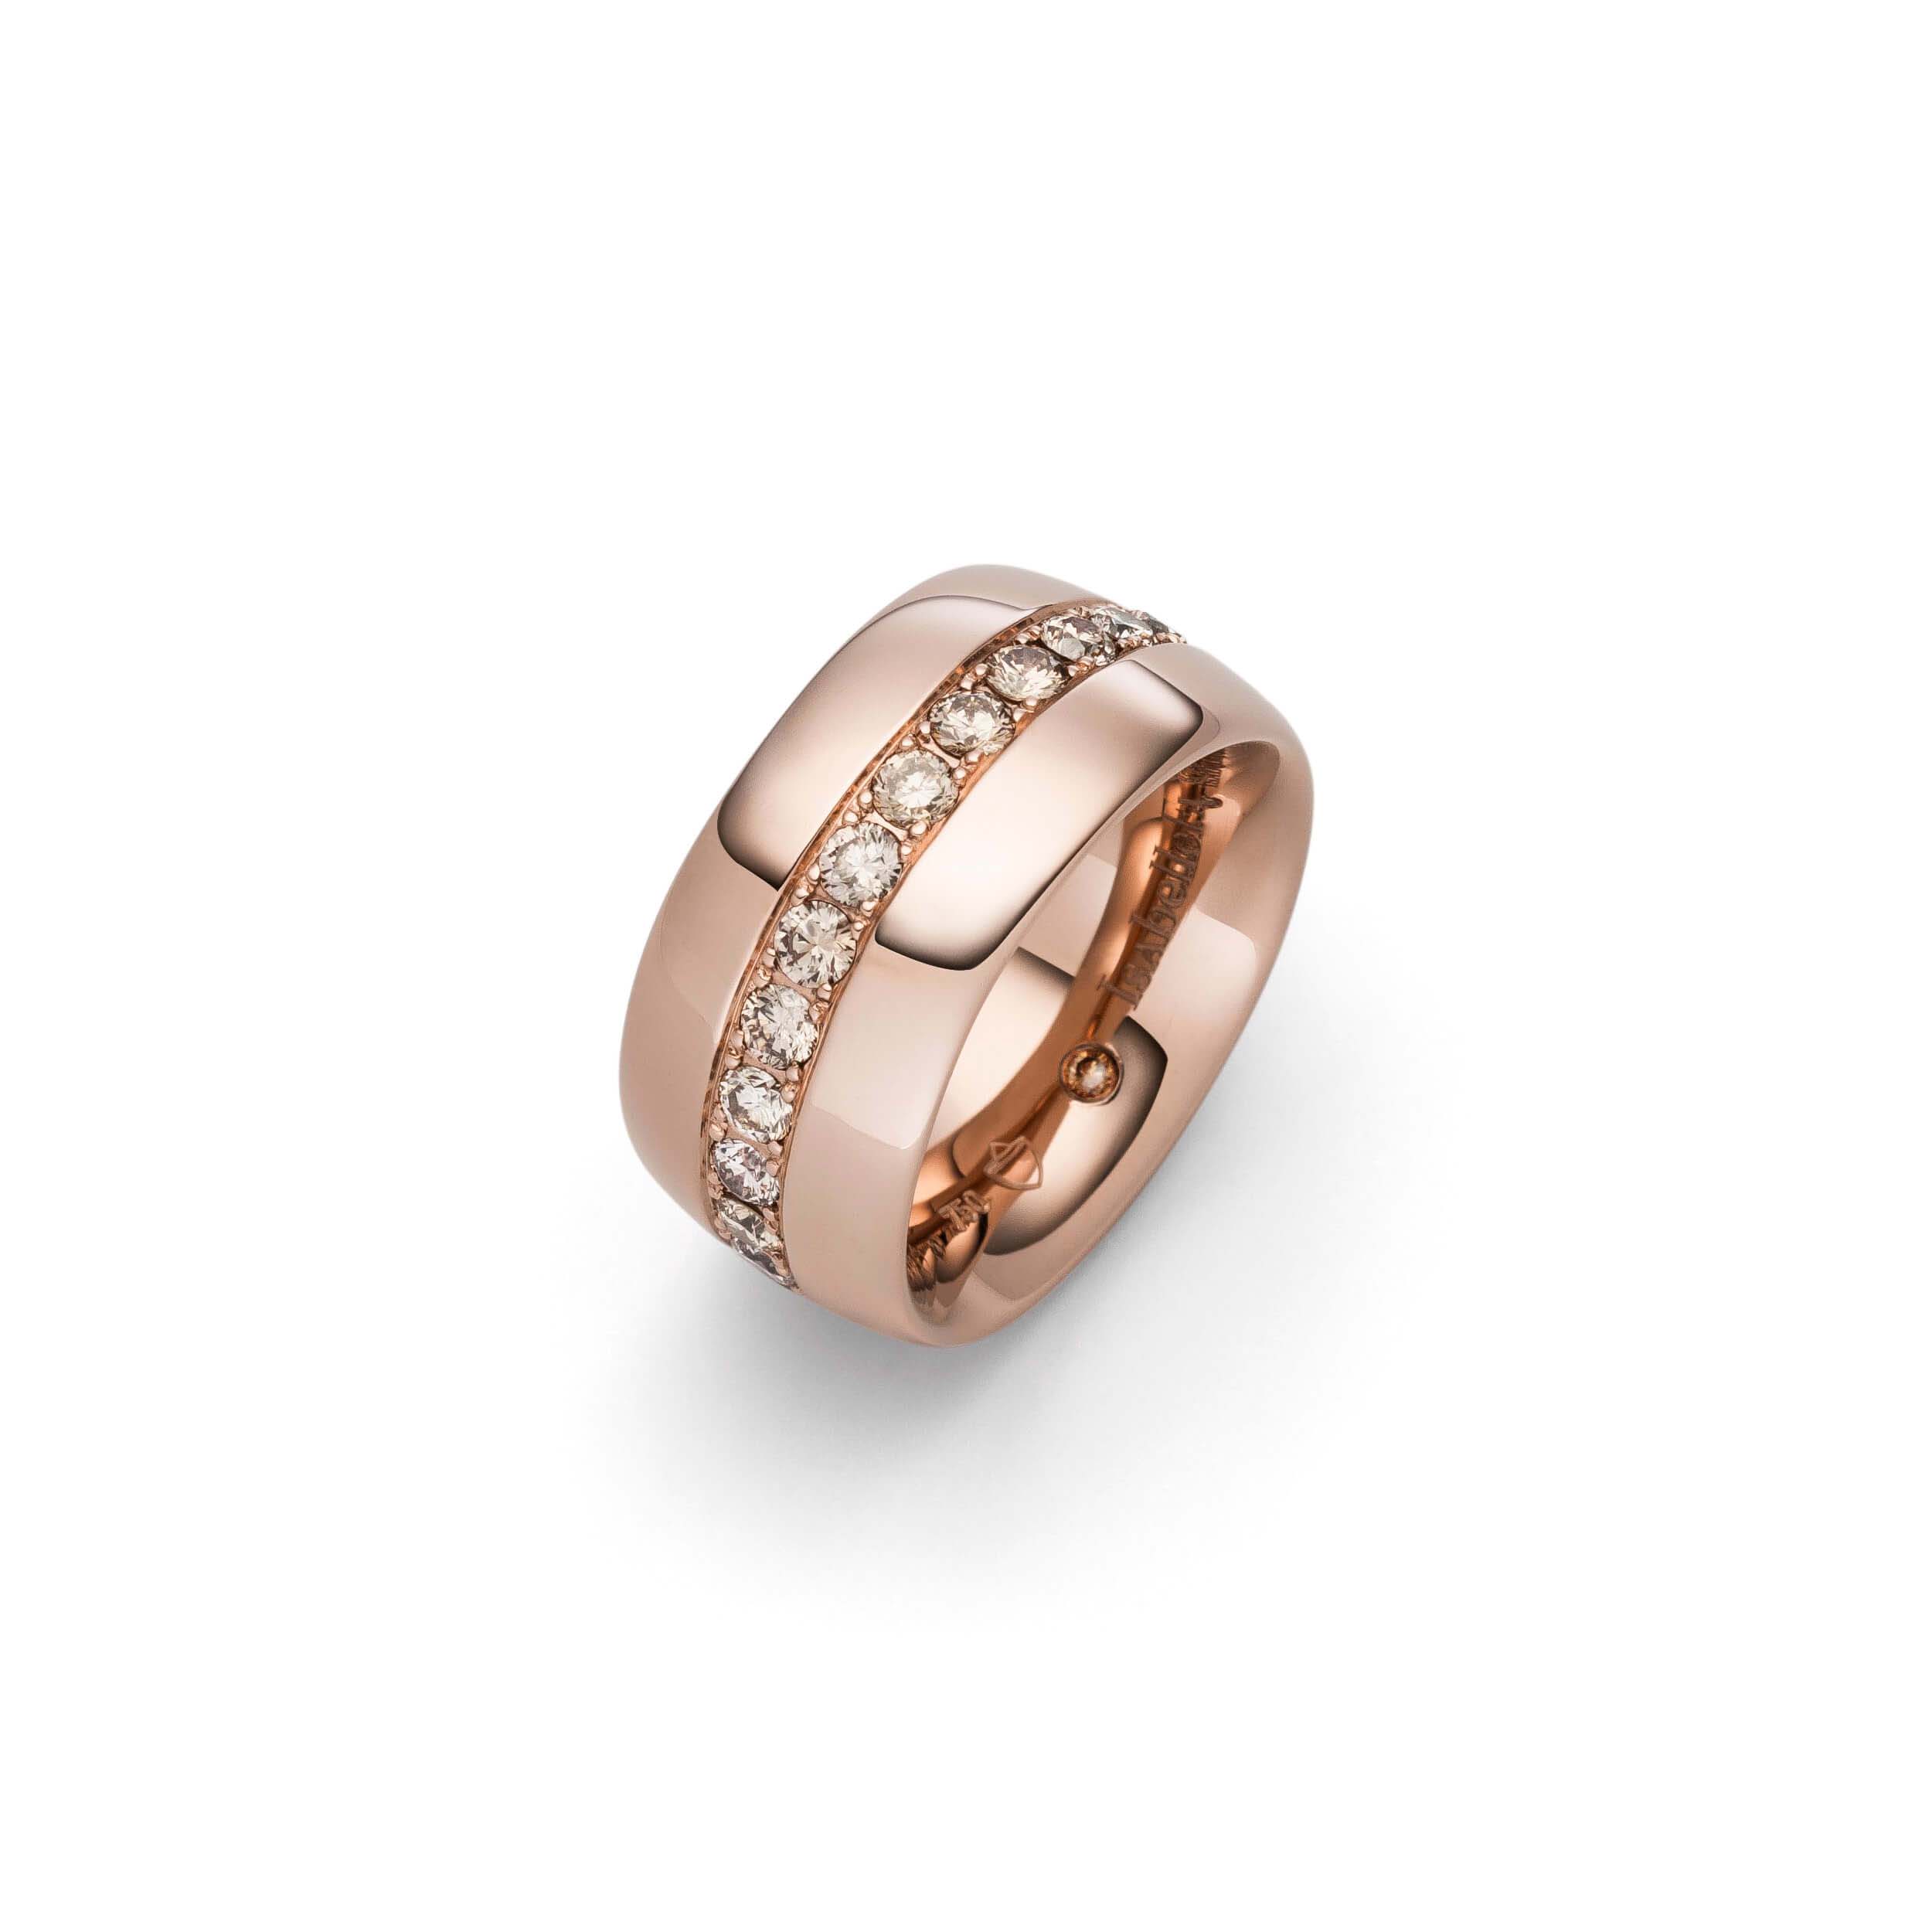 Groothandel OEM / ODM Juweliersware CZ silwer ring verskaffers bied jou idees en ontwerpe